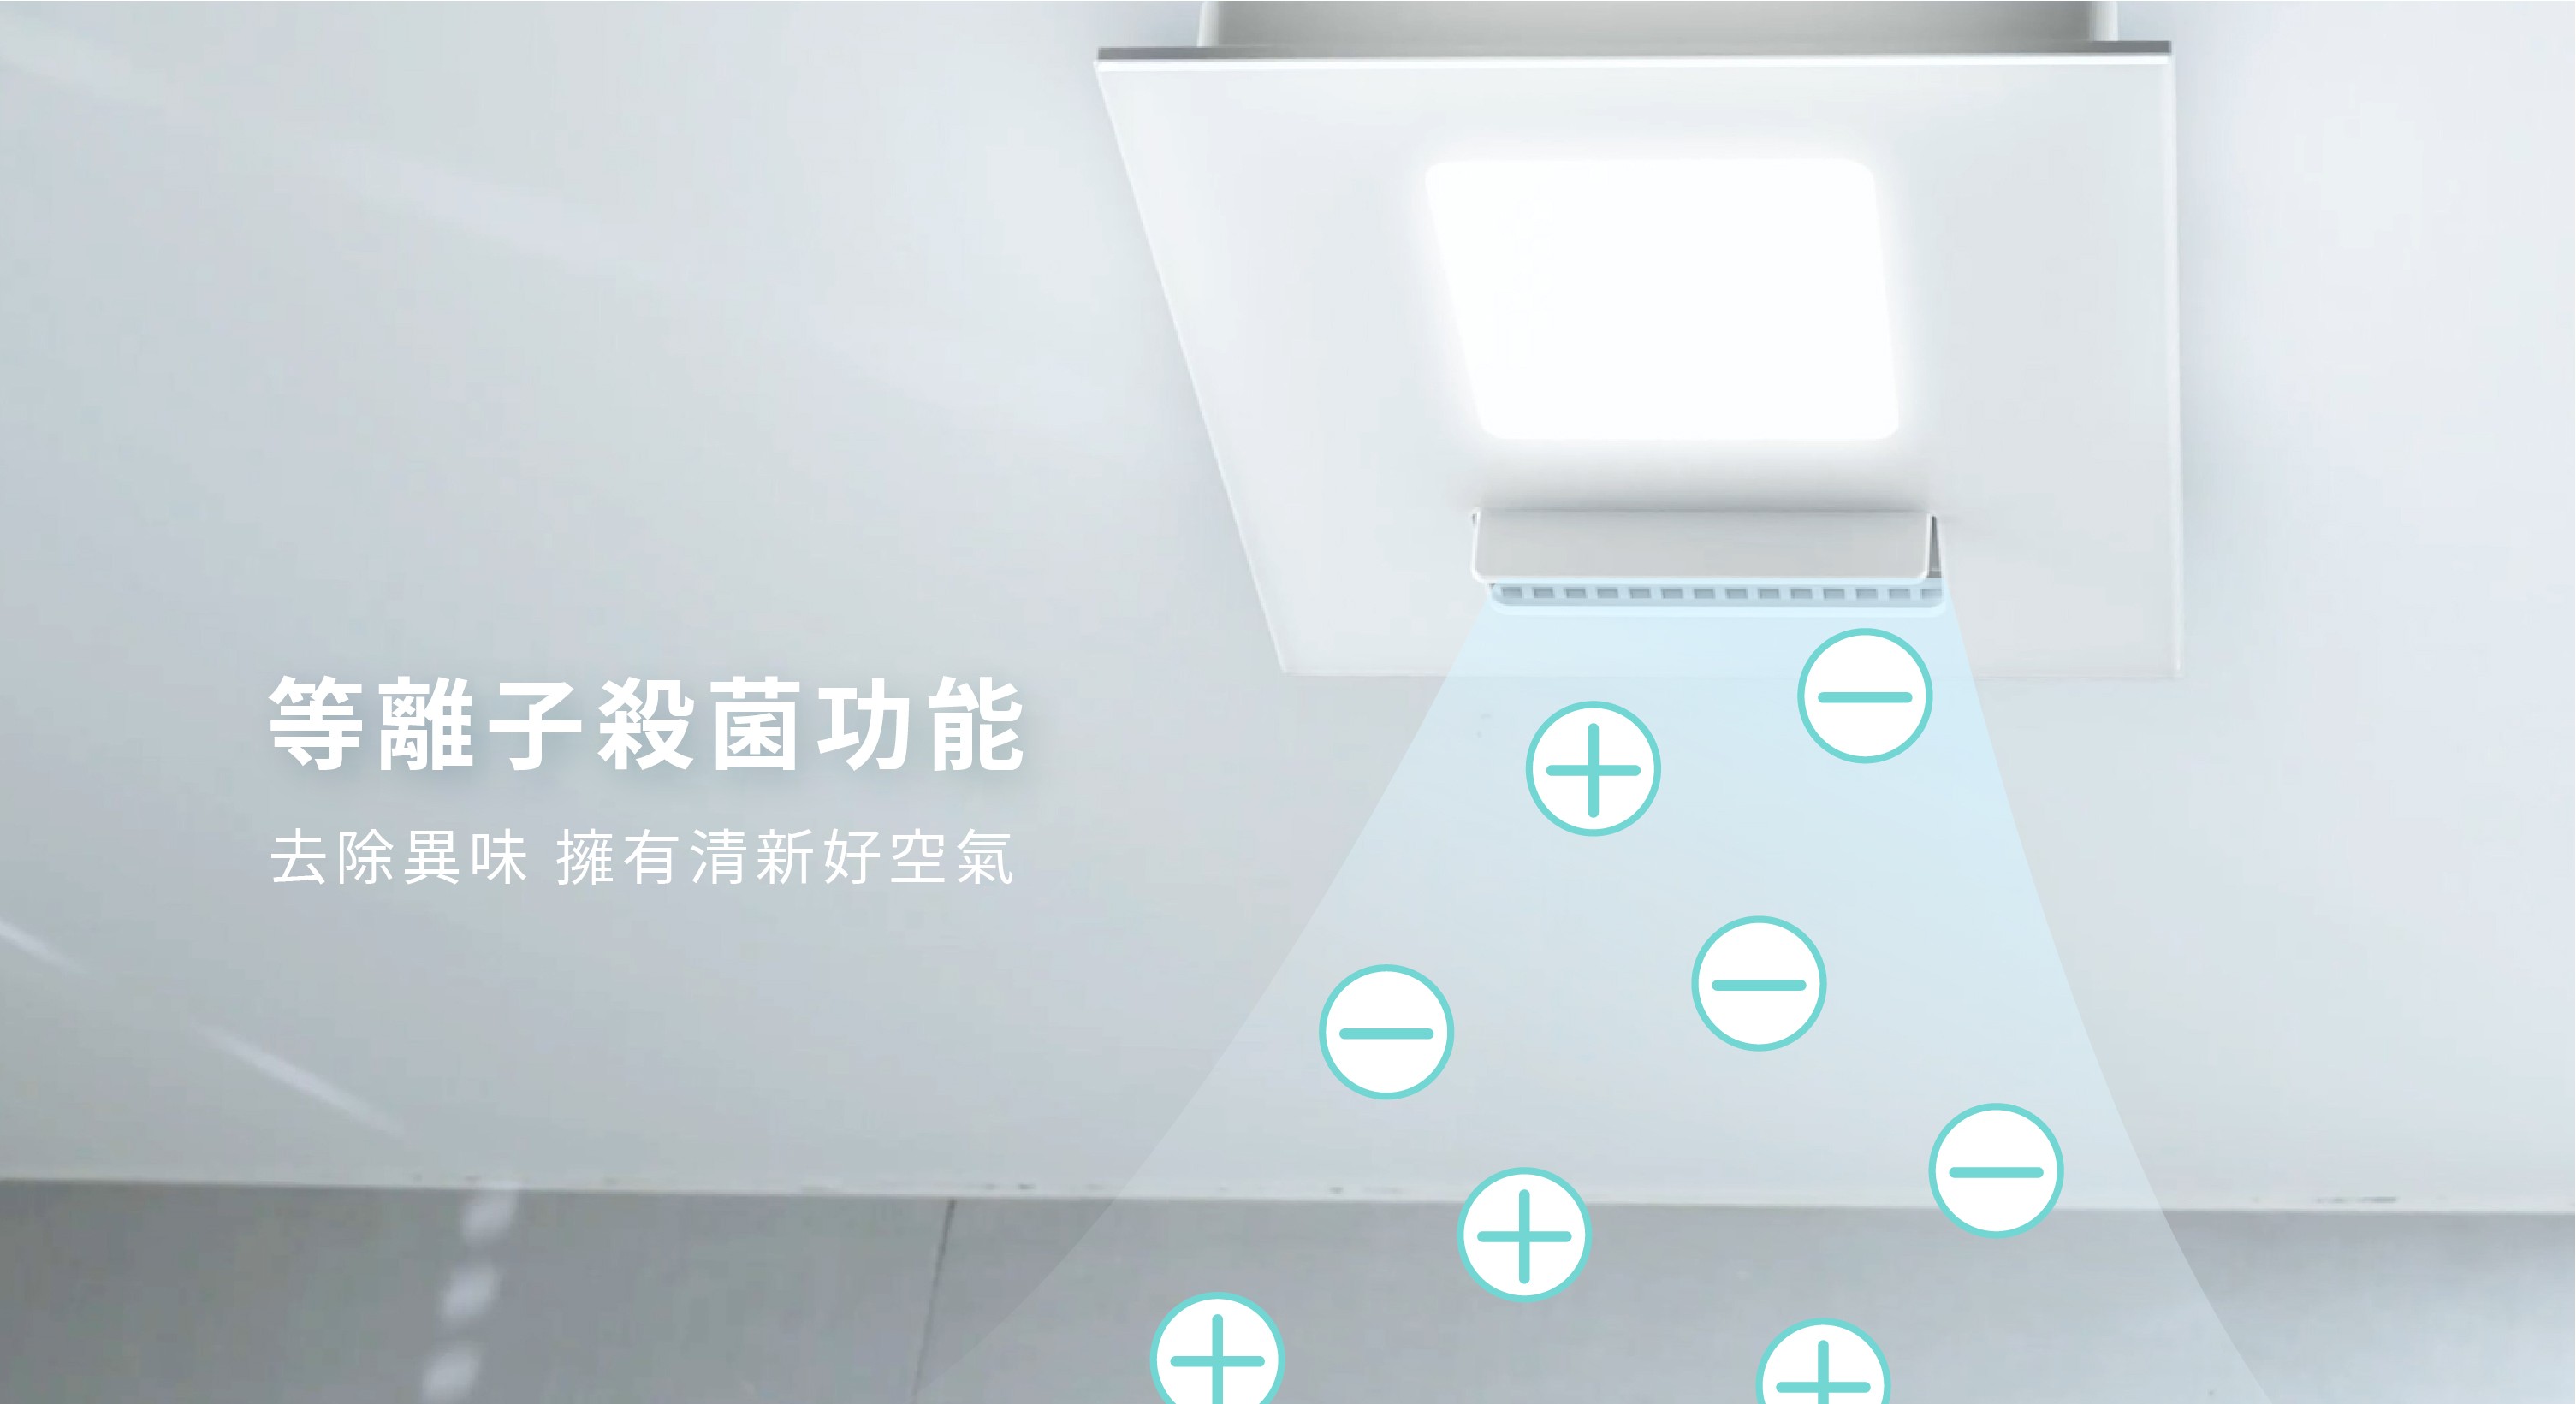 21型LED照明變頻暖房乾燥機